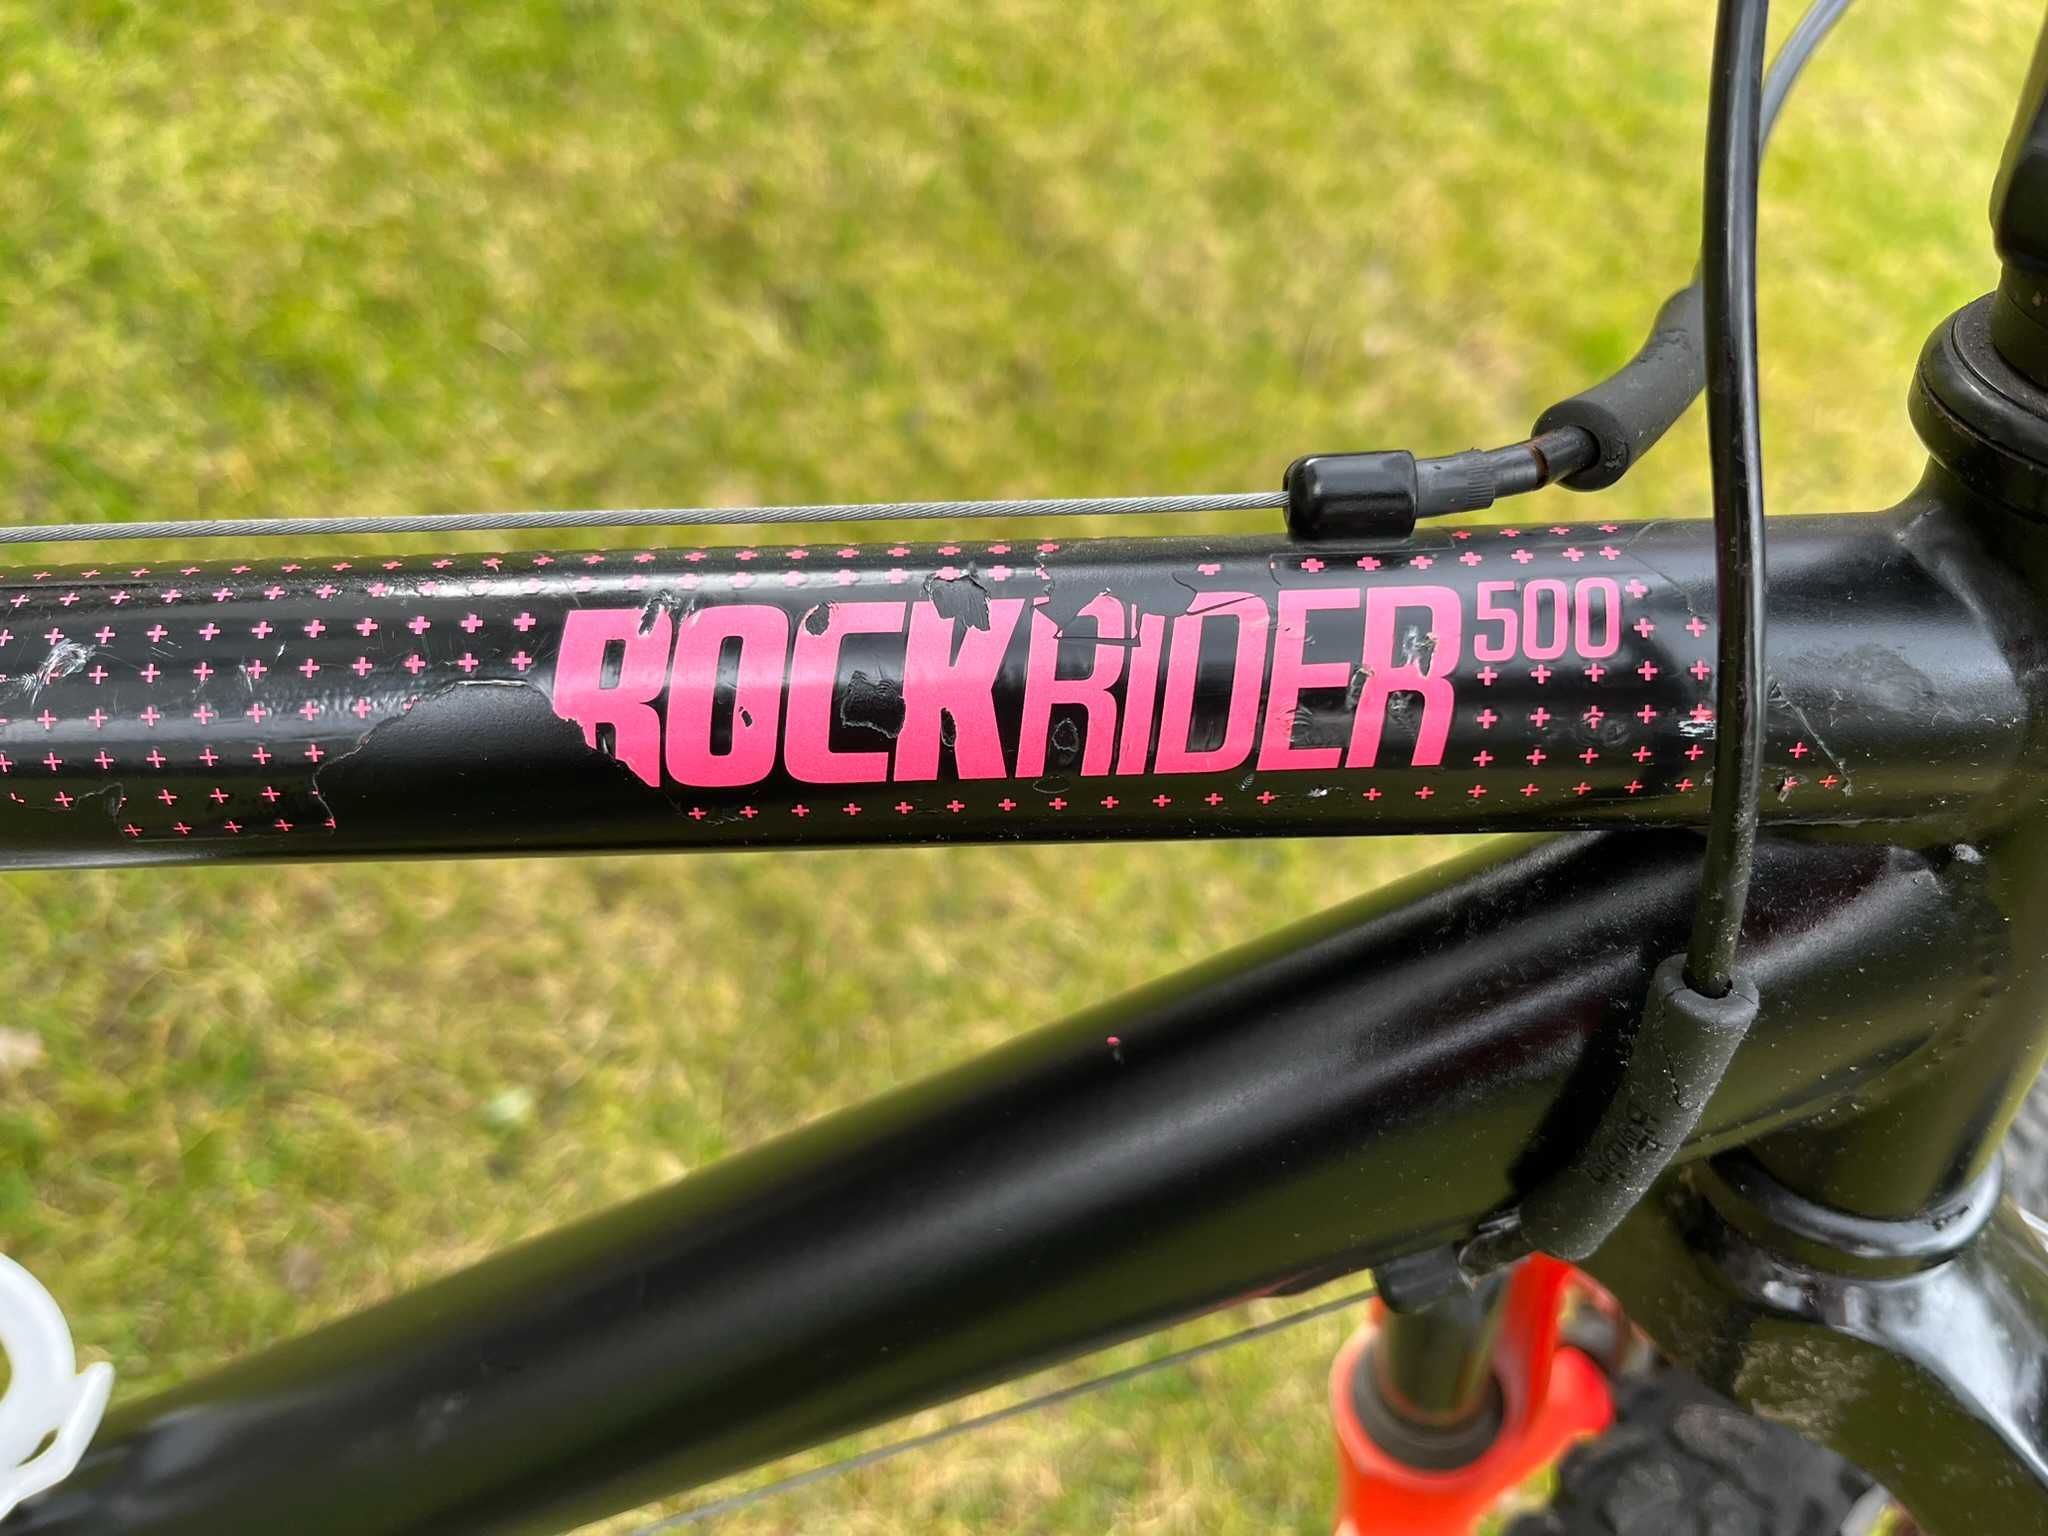 Używany rower dzieciecy Rockrider 500, 24”